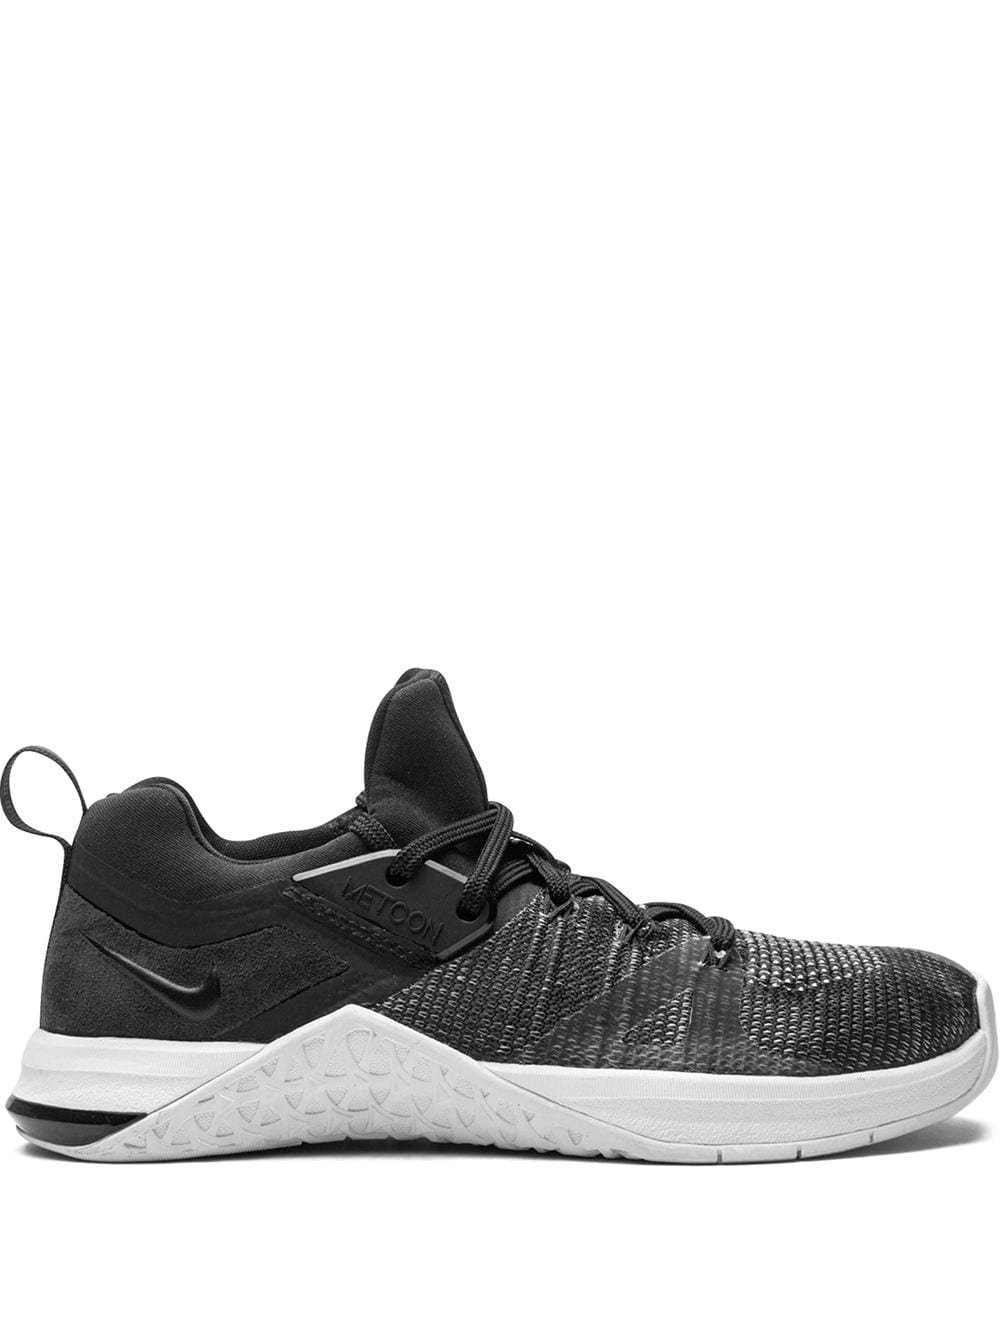 Nike Metcon Flyknit 3 Sneakers In Black